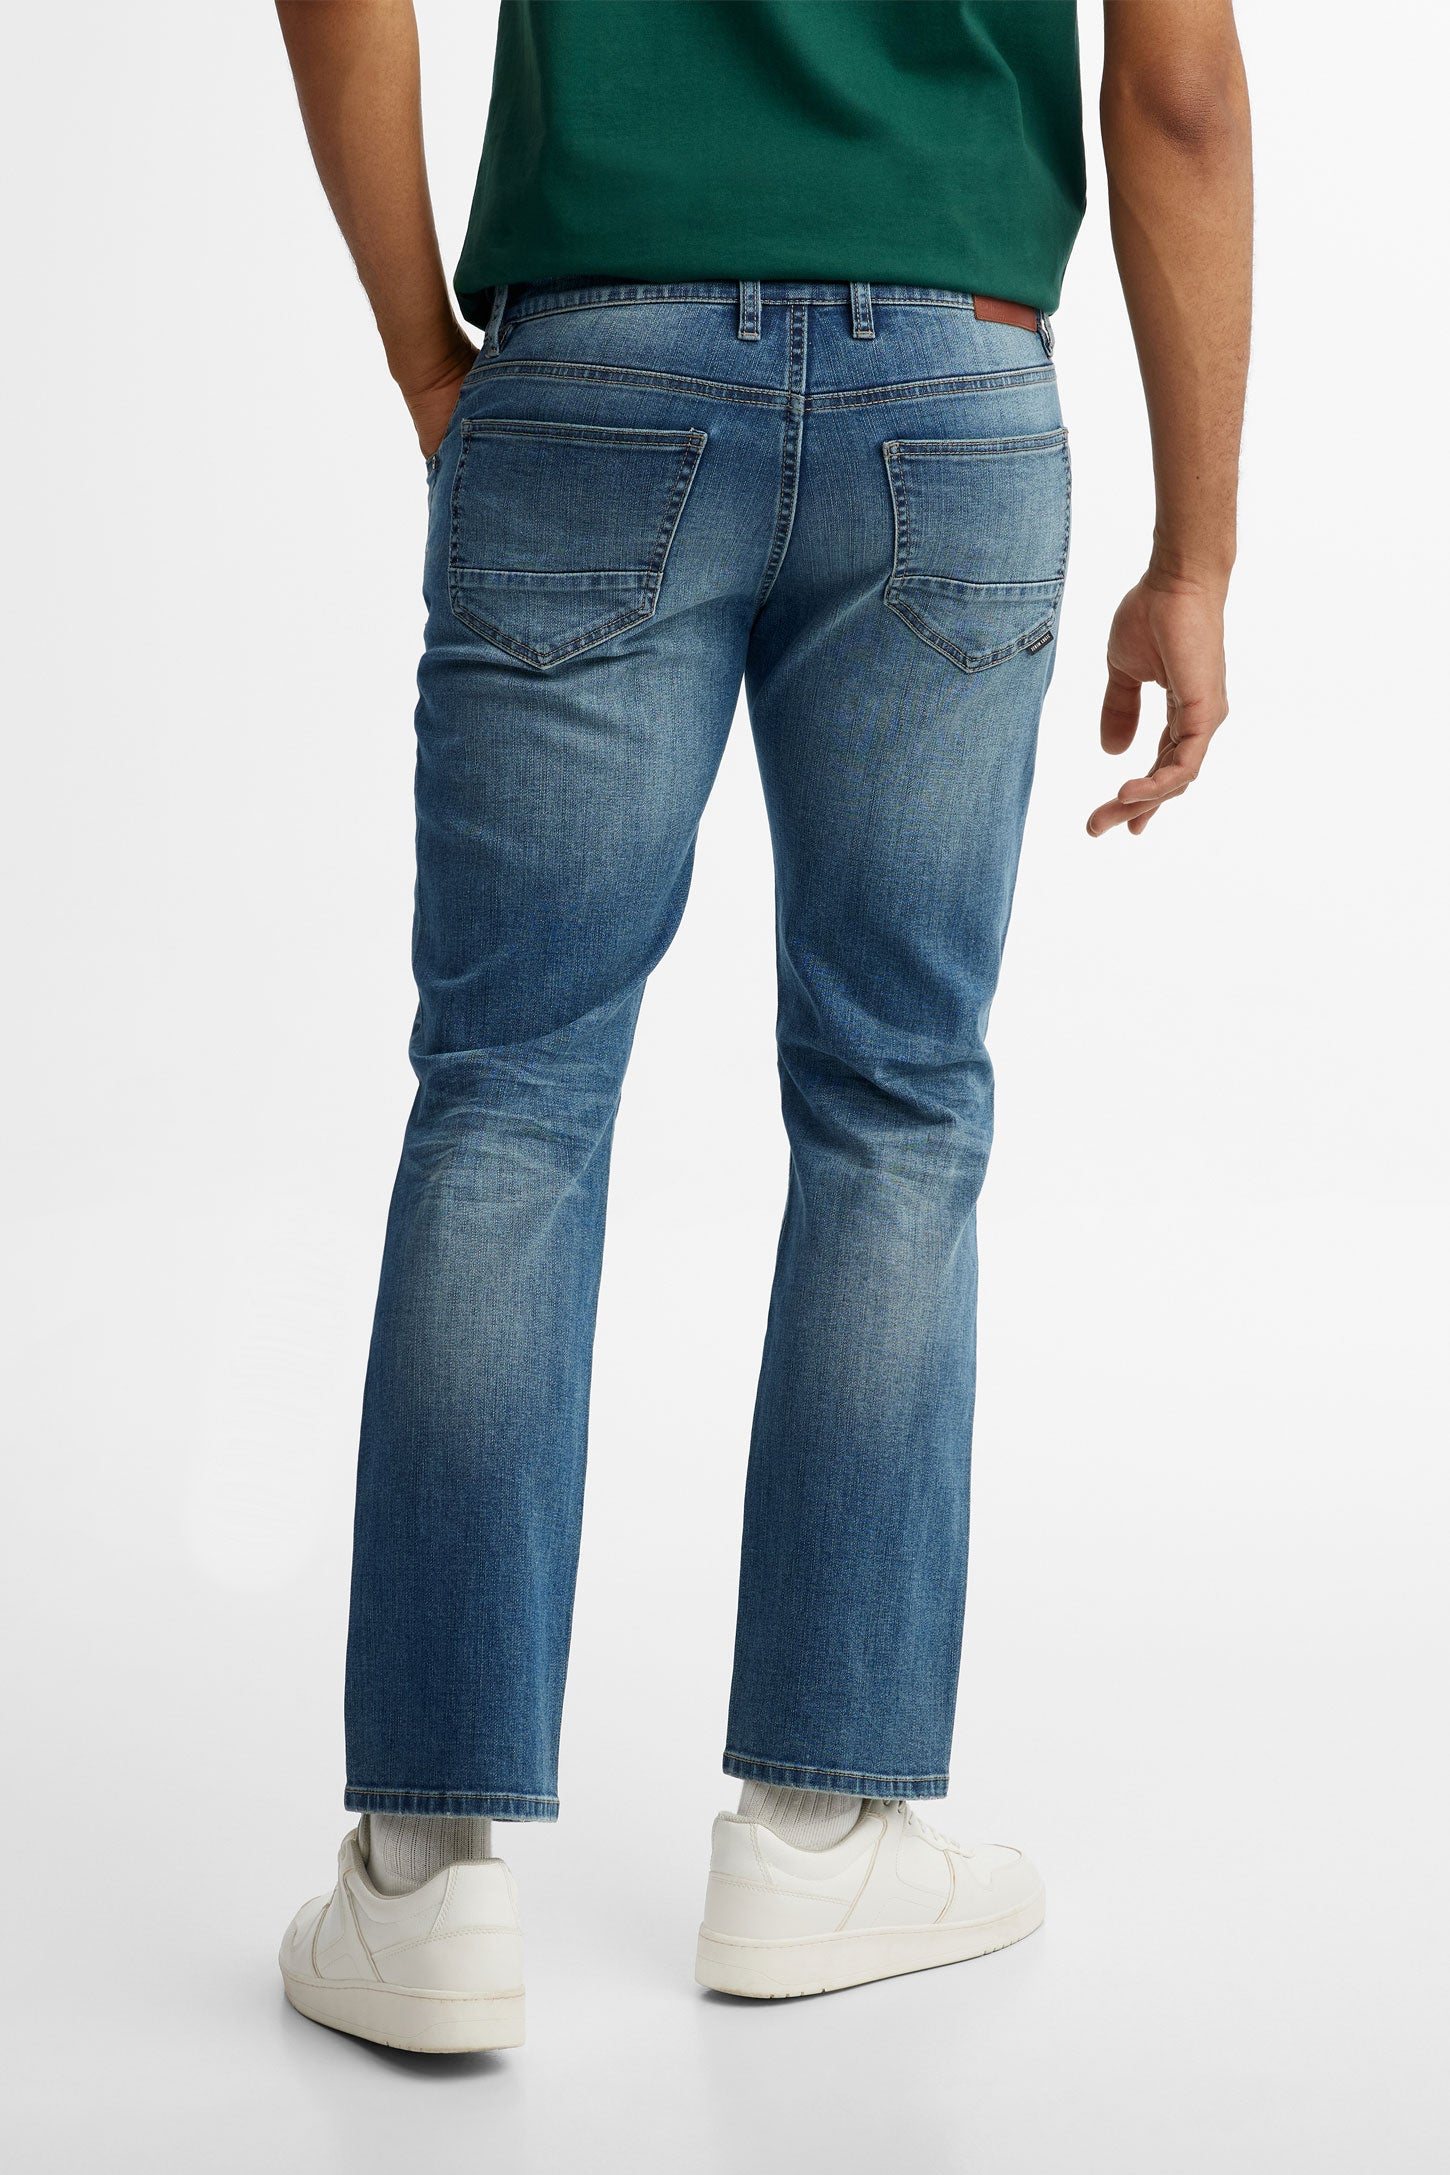 Jeans 5 poches délavé jambe droite - Homme && BLEU FONCE